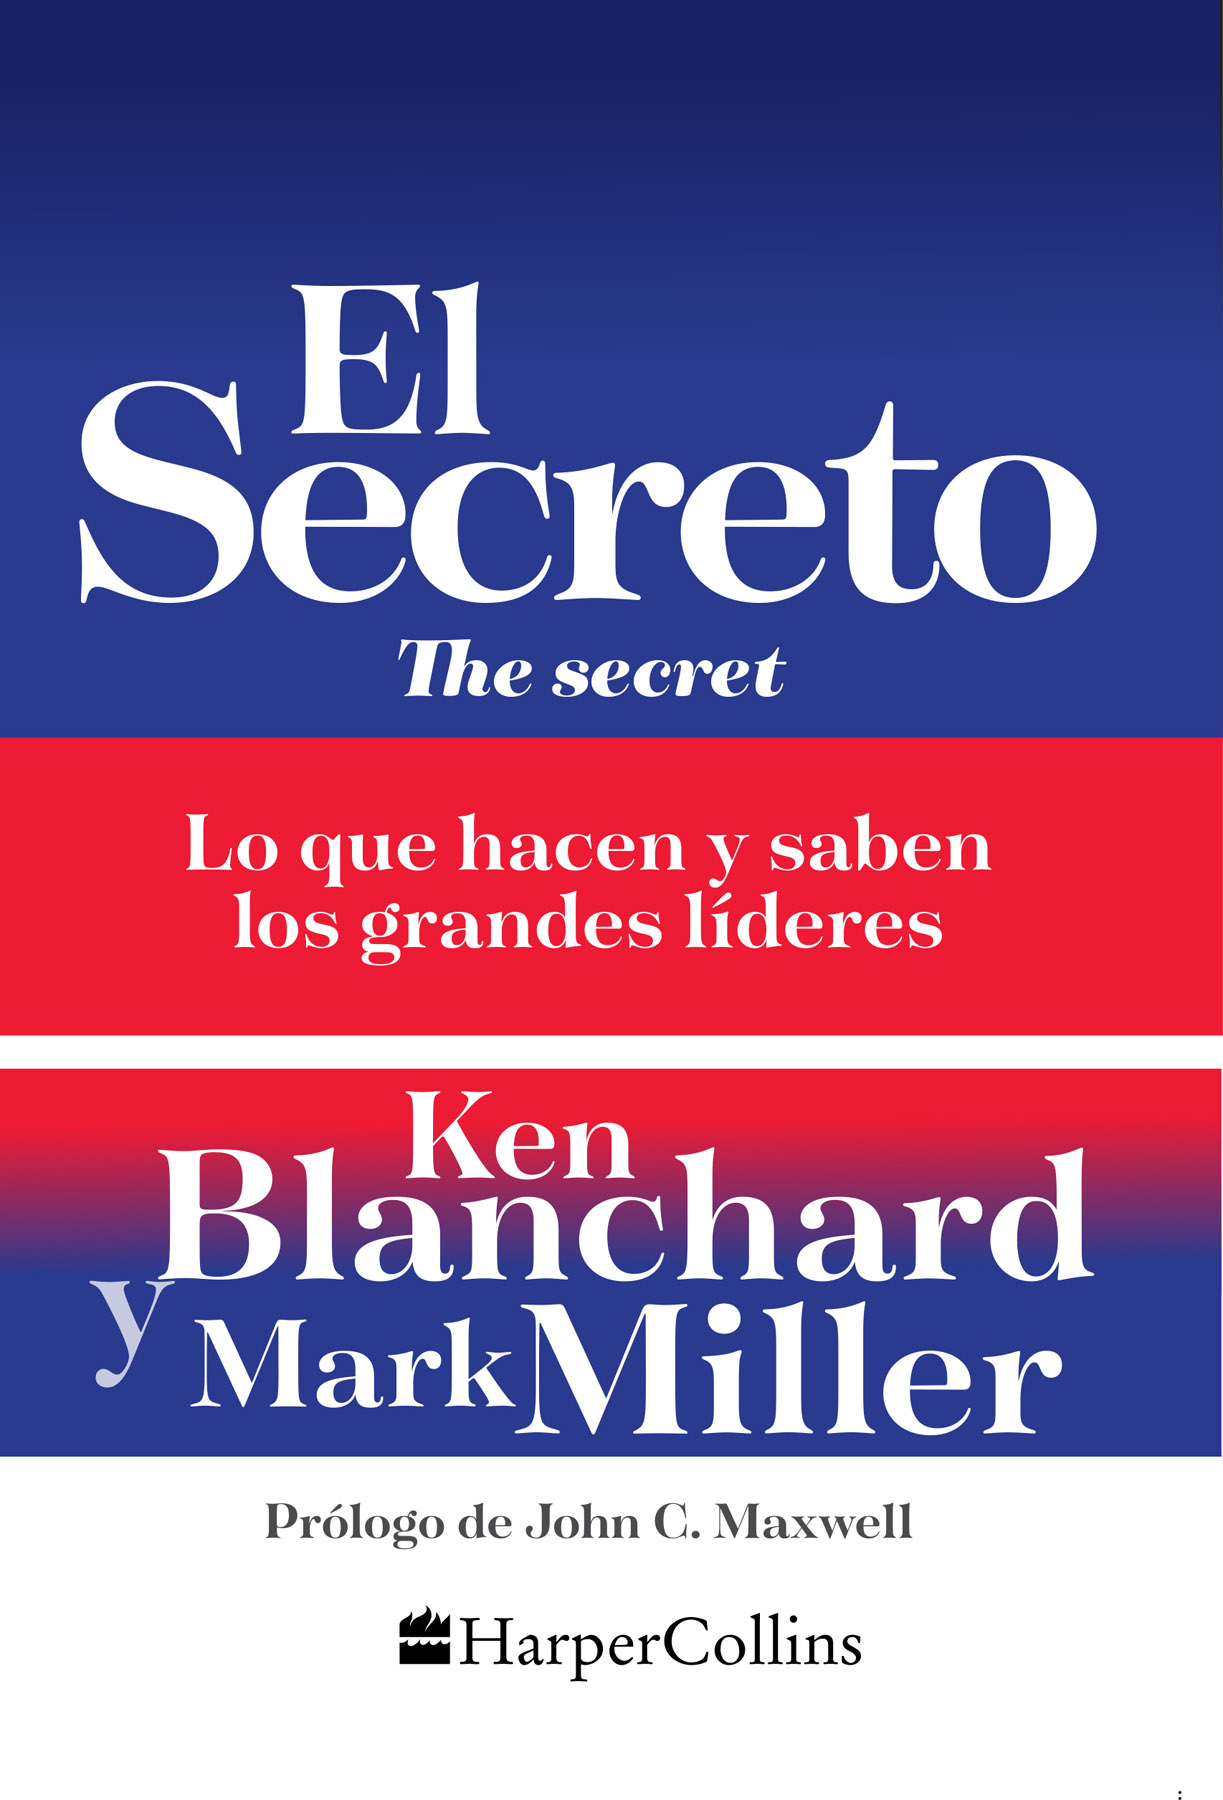 2018 HarperCollins México SA de CV Publicado por HarperCollins México - photo 1